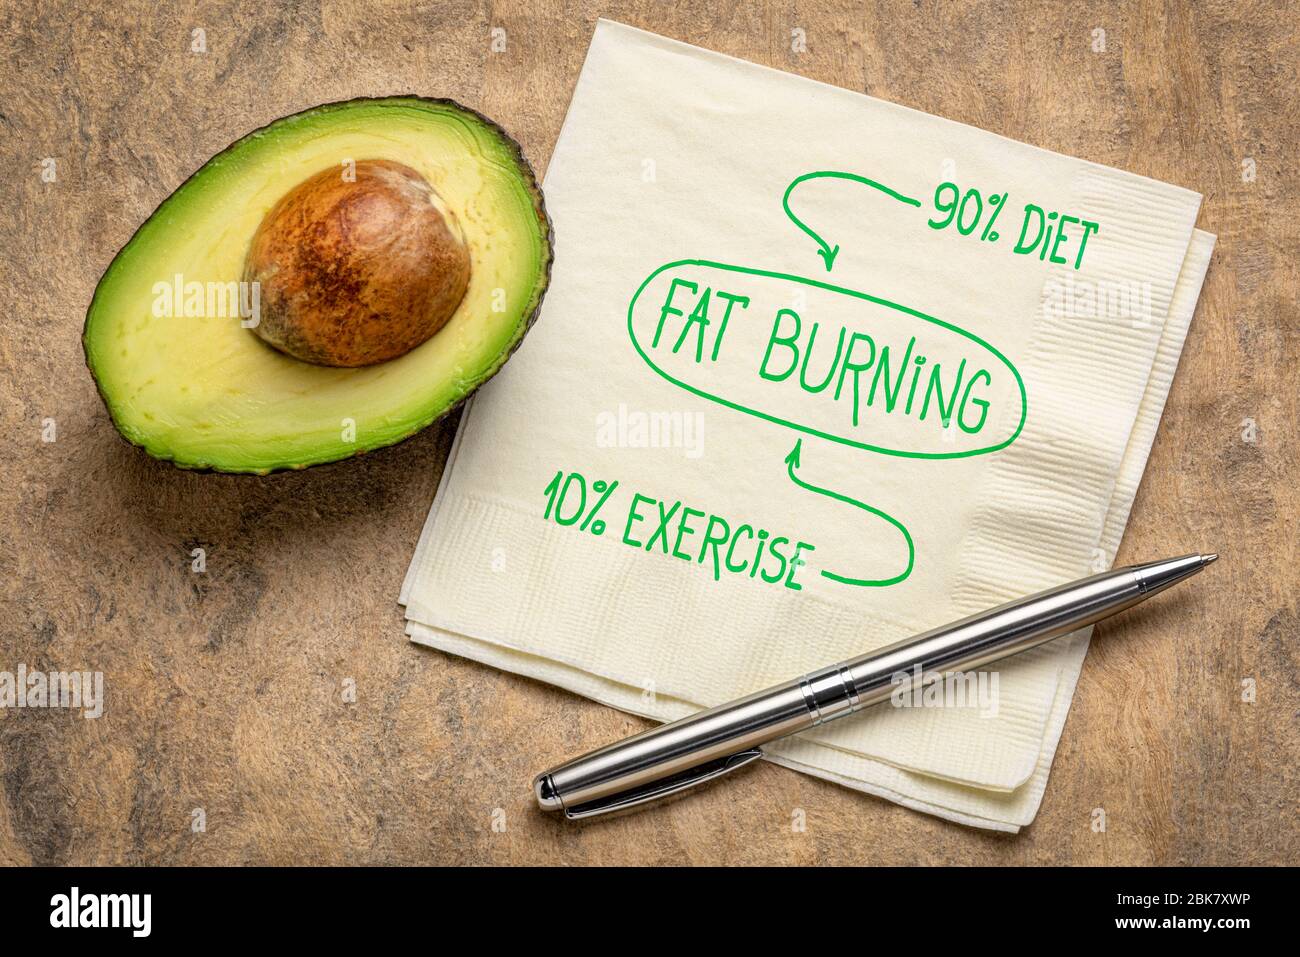 Fat Burning, Diät und Bewegung Konzept - Handschrift auf Serviette mit Avocado, gesundes Leben Konzept Stockfoto